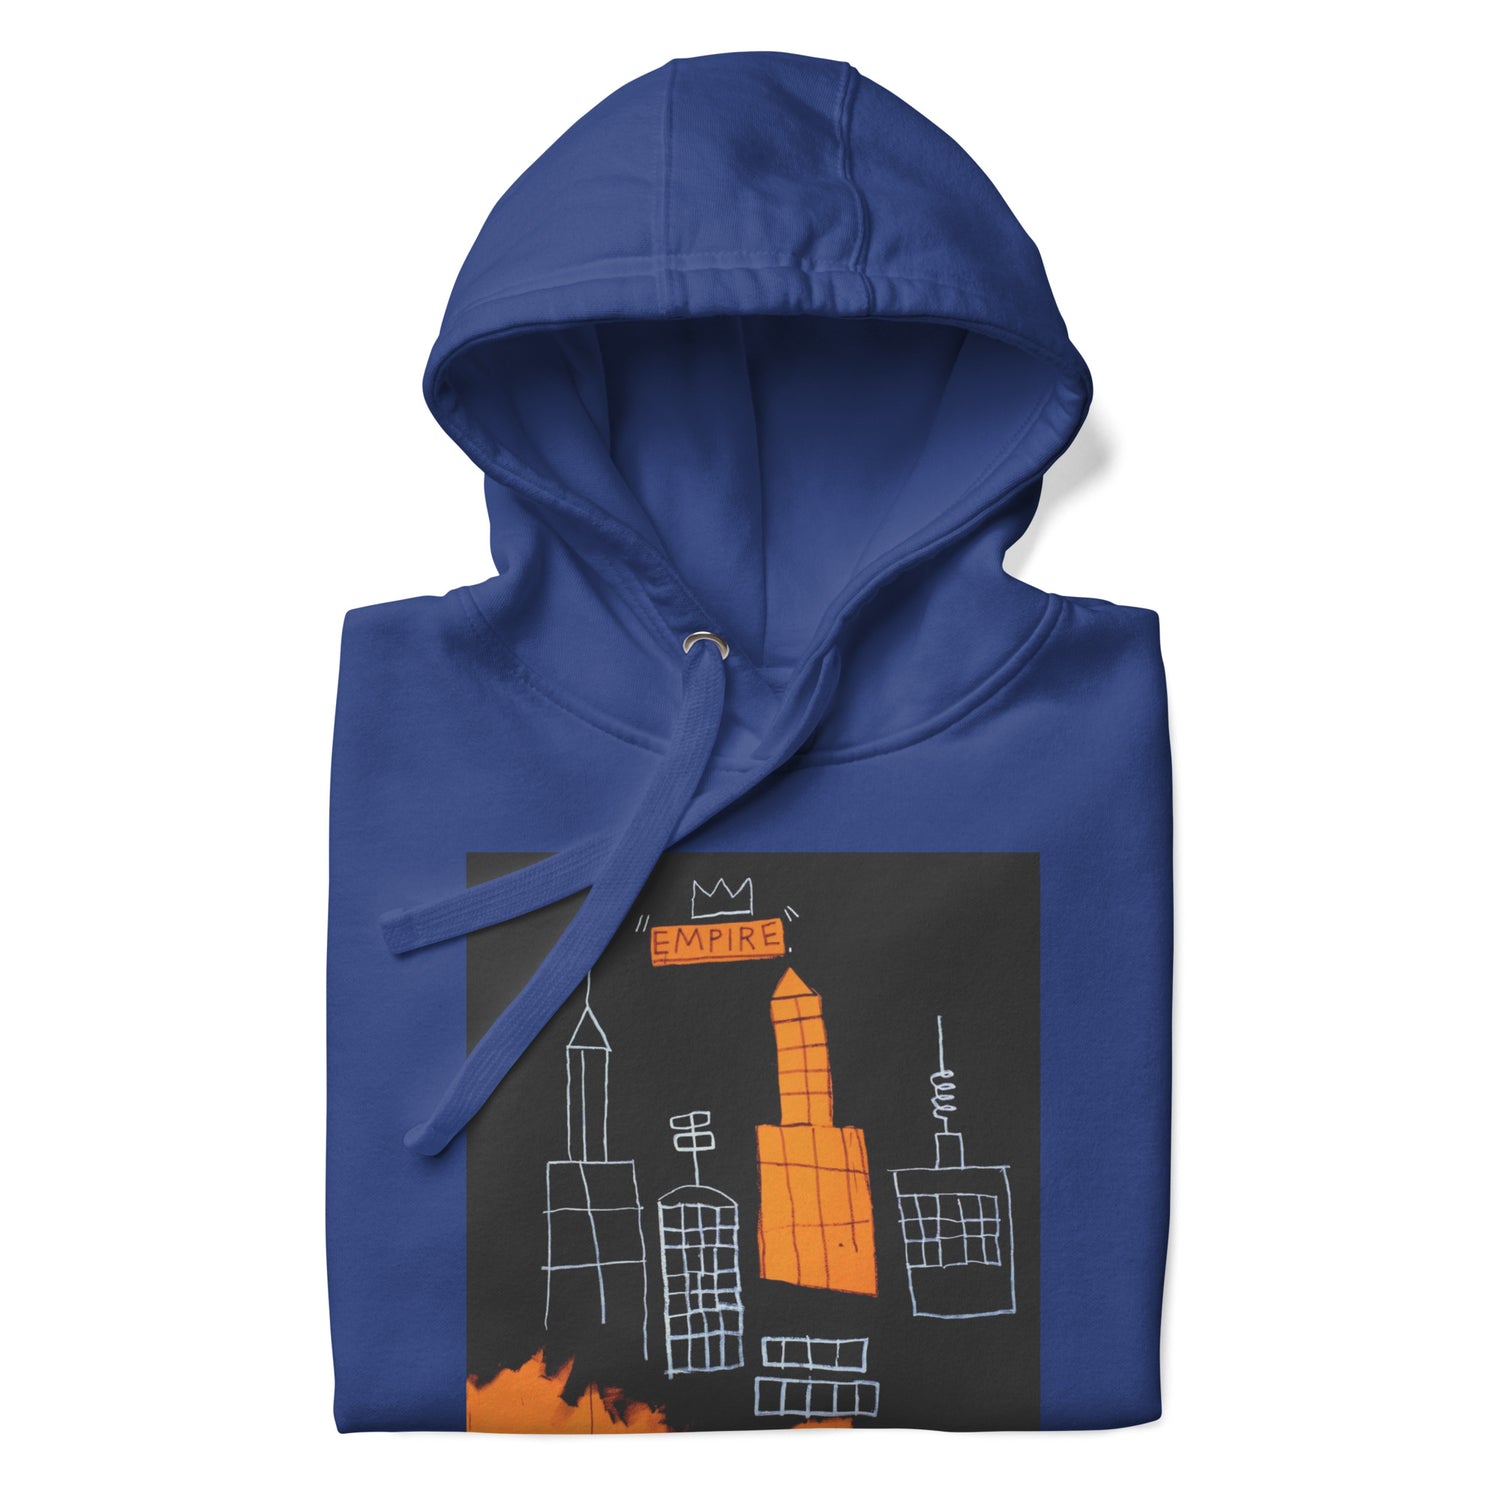 Jean-Michel Basquiat "Mecca" Artwork Printed Premium Streetwear Sweatshirt Hoodie Royal Blue